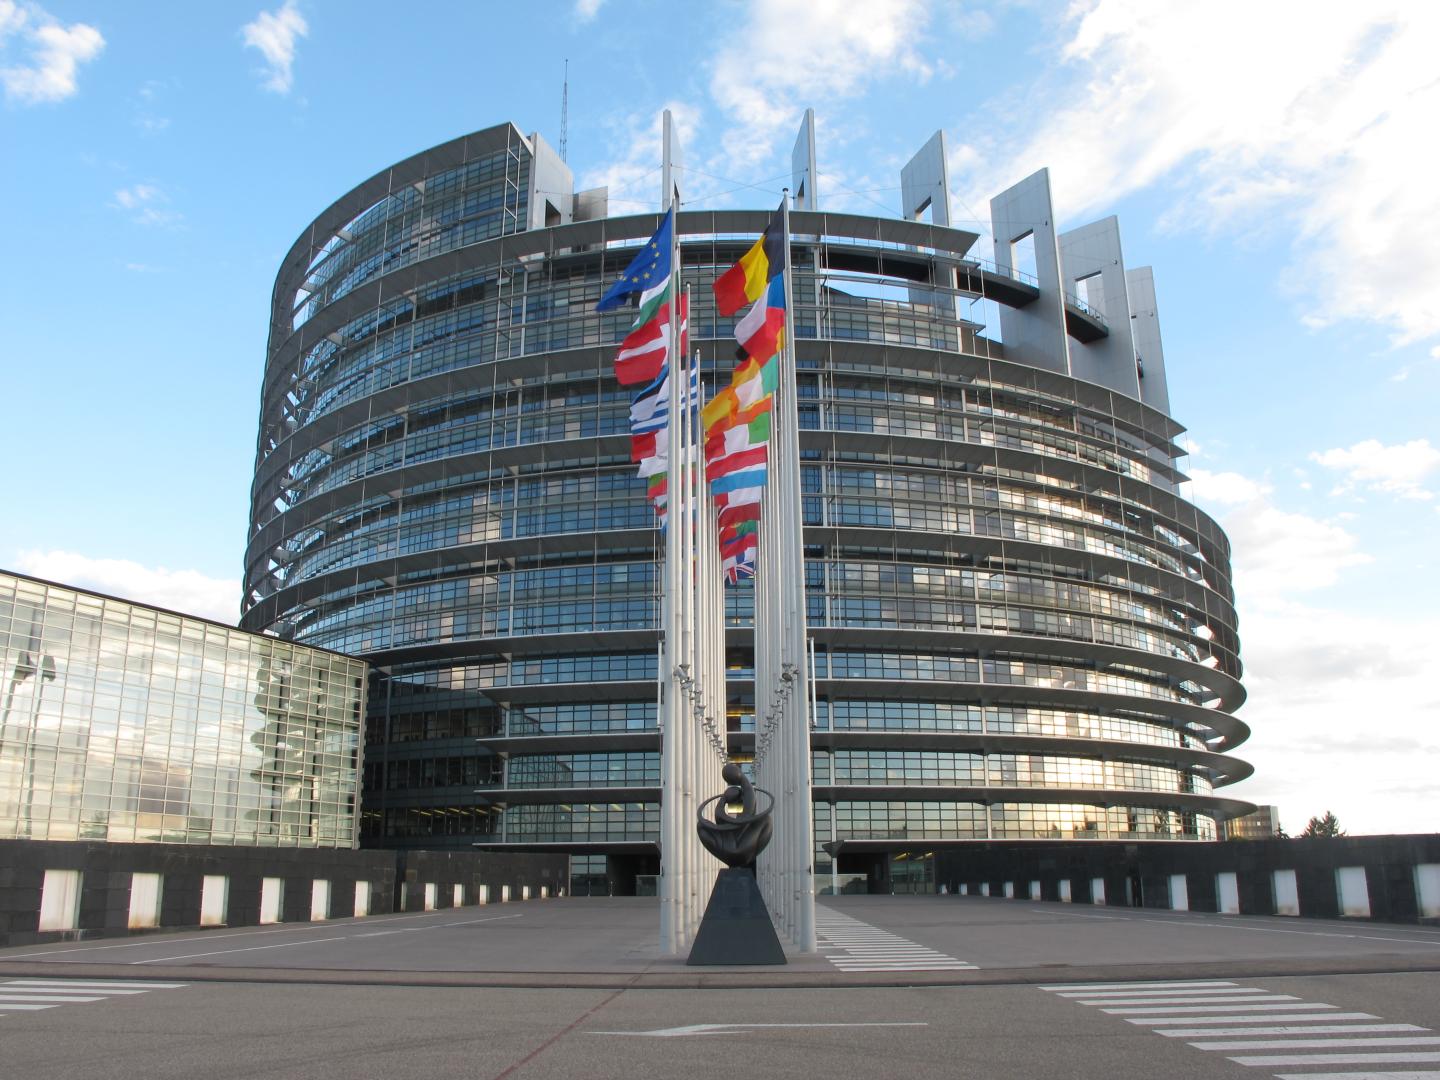 Parlamentul European blochează ajutorul de 100 de milioane de euro pentru Republica Moldova. Mureşan: „este cea mai dură rezoluție despre Moldova adoptată de Parlament în ultimii 10 ani”. Partidul Democrat, de guvernământ, supărat pe opoziție și UE